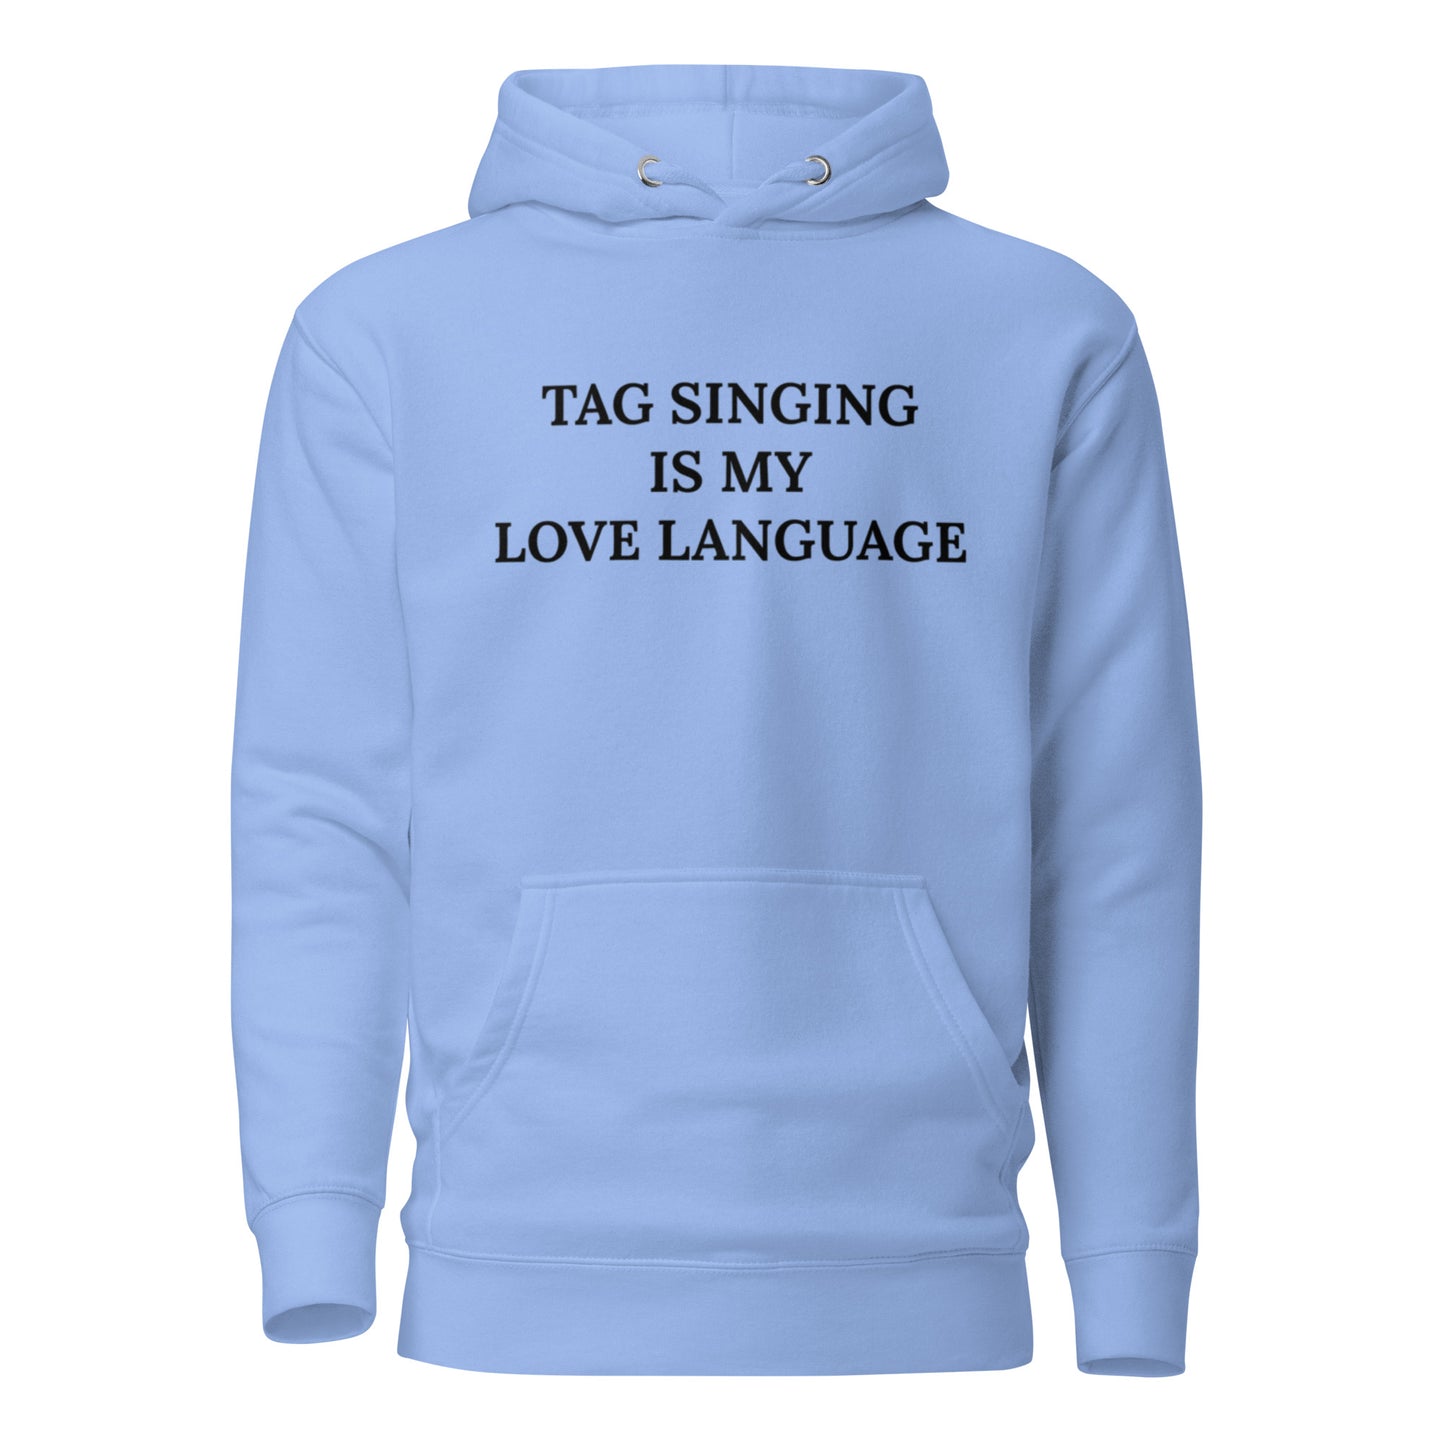 Tag singing is my love language - Screen Printed Unisex Hoodie